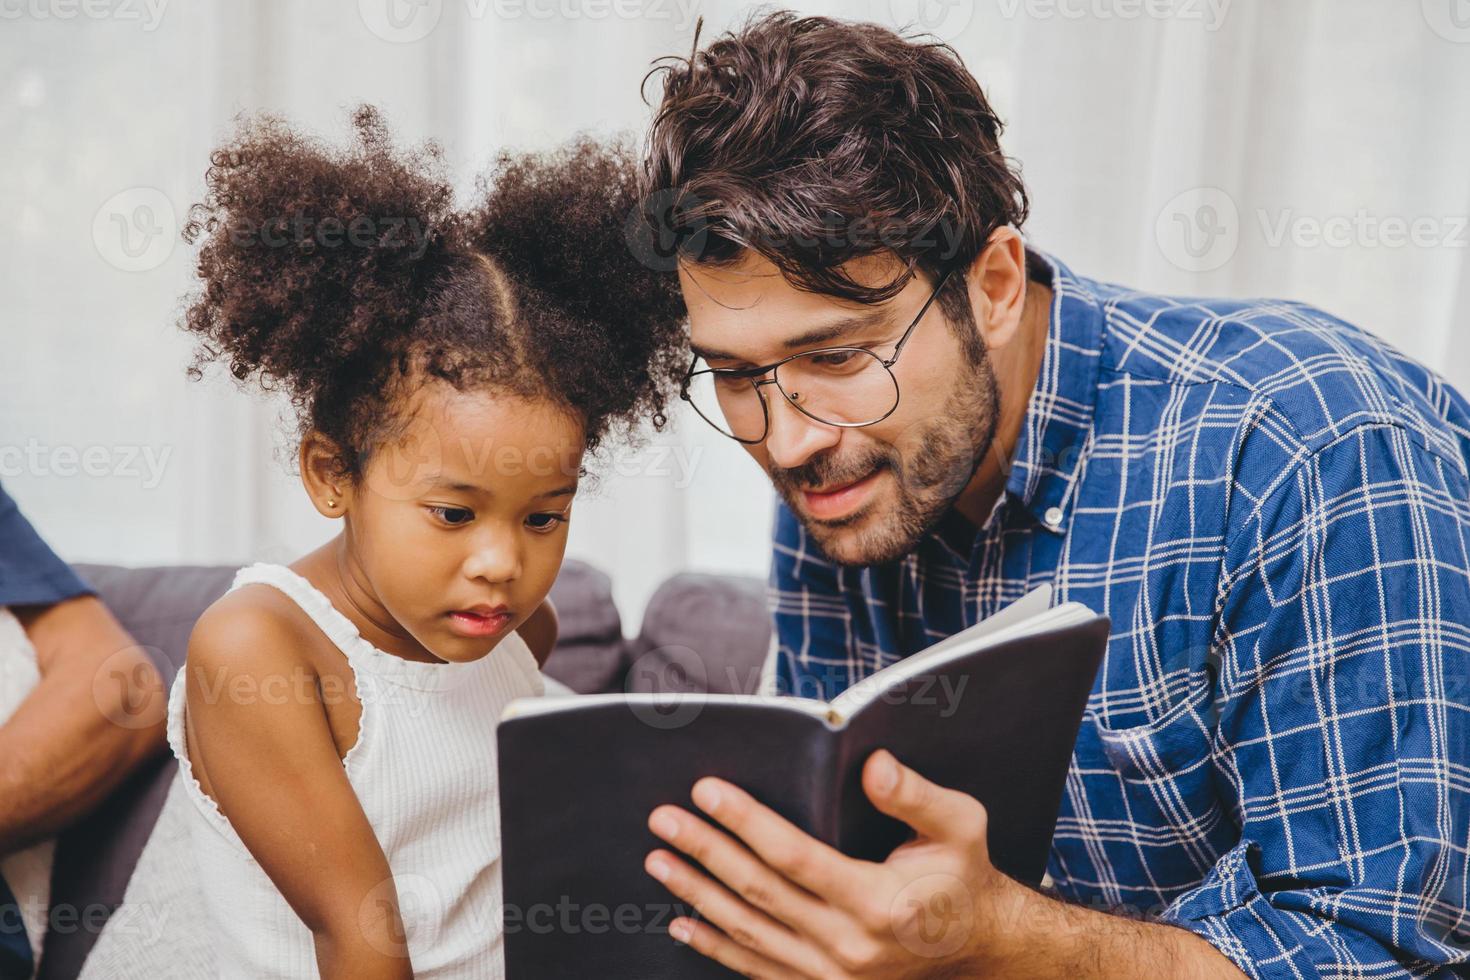 klein schattig kind dat het boek interessant vindt, houdt van lezen en leren steun van vader tot slim kindconcept. foto